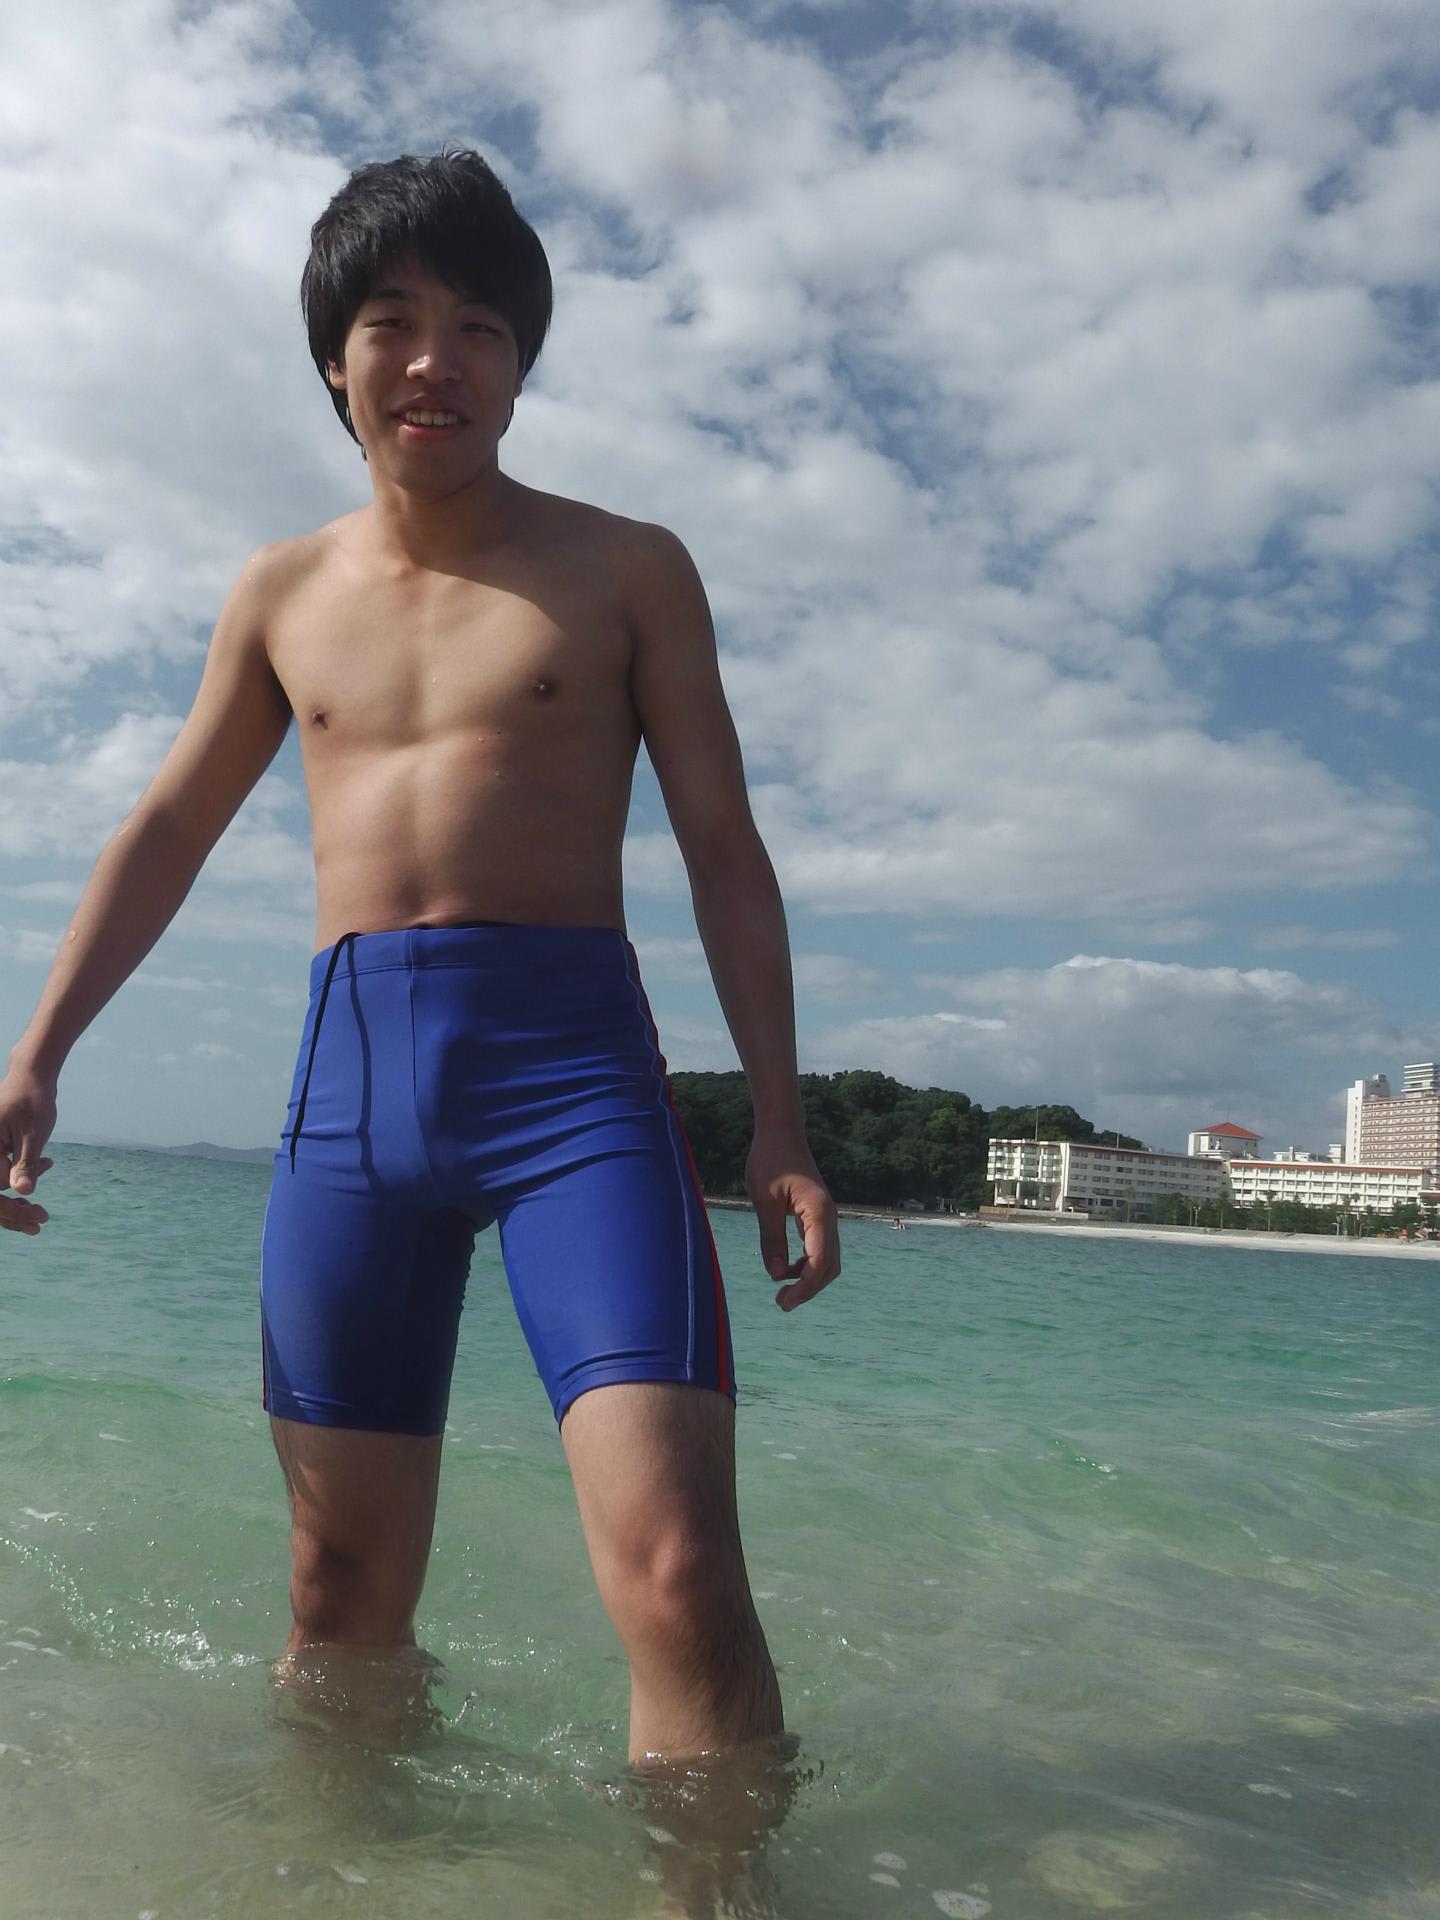 ぶさいけシリーズ第１弾やすなり君 ９月２４日白浜 白良浜で撮影 スパッツ１種２８４カット 水着 男子モデルが提供する各種サービスについてのご案内ブログです